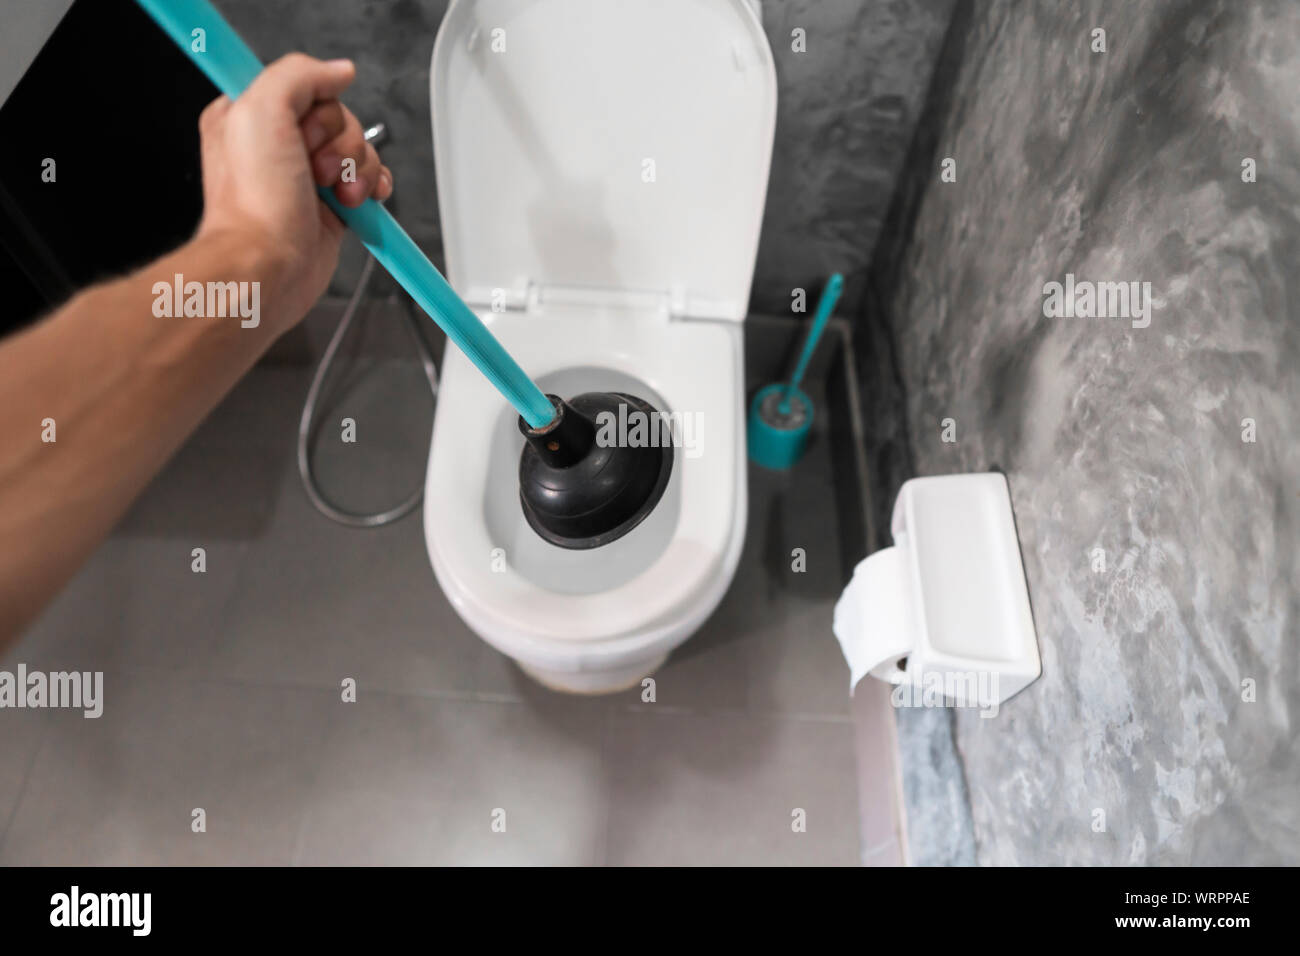 Wc Reparatur von Hand mit einem Wc Kolben. Sanitär. Ein klempner verwendet  ein Kolben eine Toilette zu reinigen. Wc Kolben Stockfotografie - Alamy